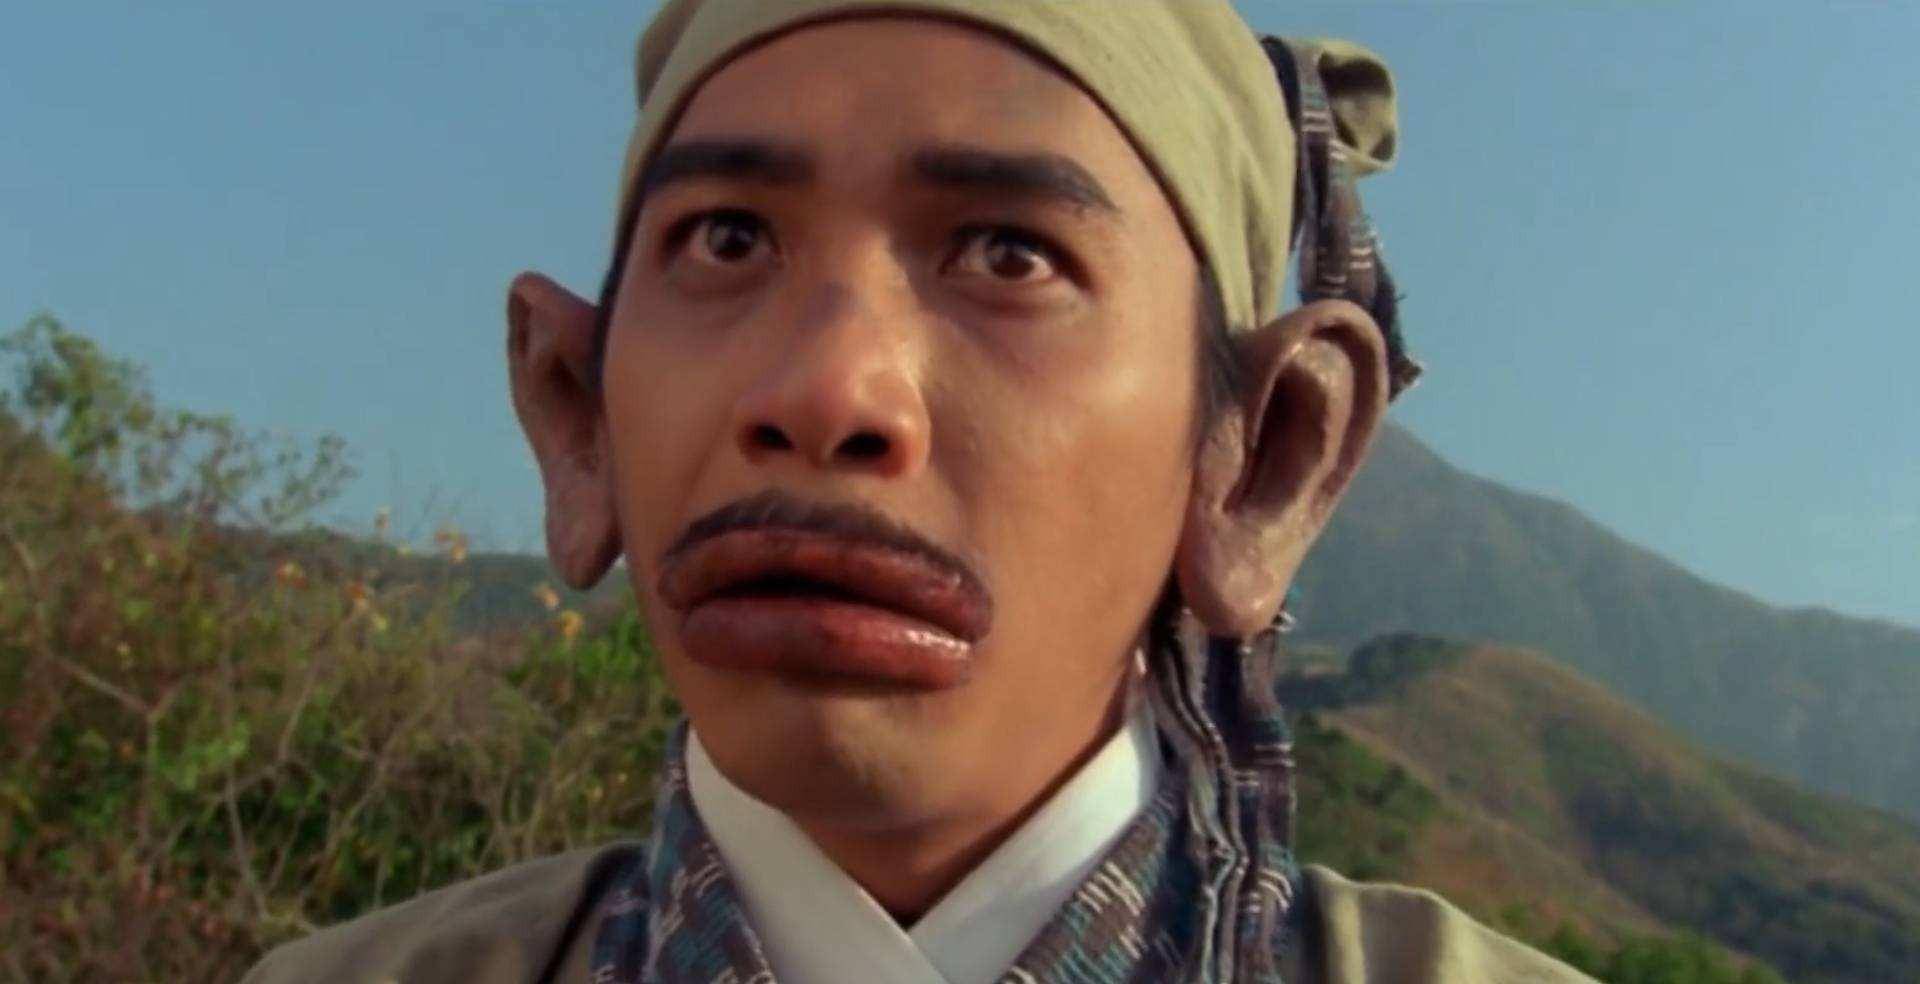 迪丽热巴在《傲娇与偏见》中饰演的唐楠楠因为对花粉过敏,嘴唇肿成